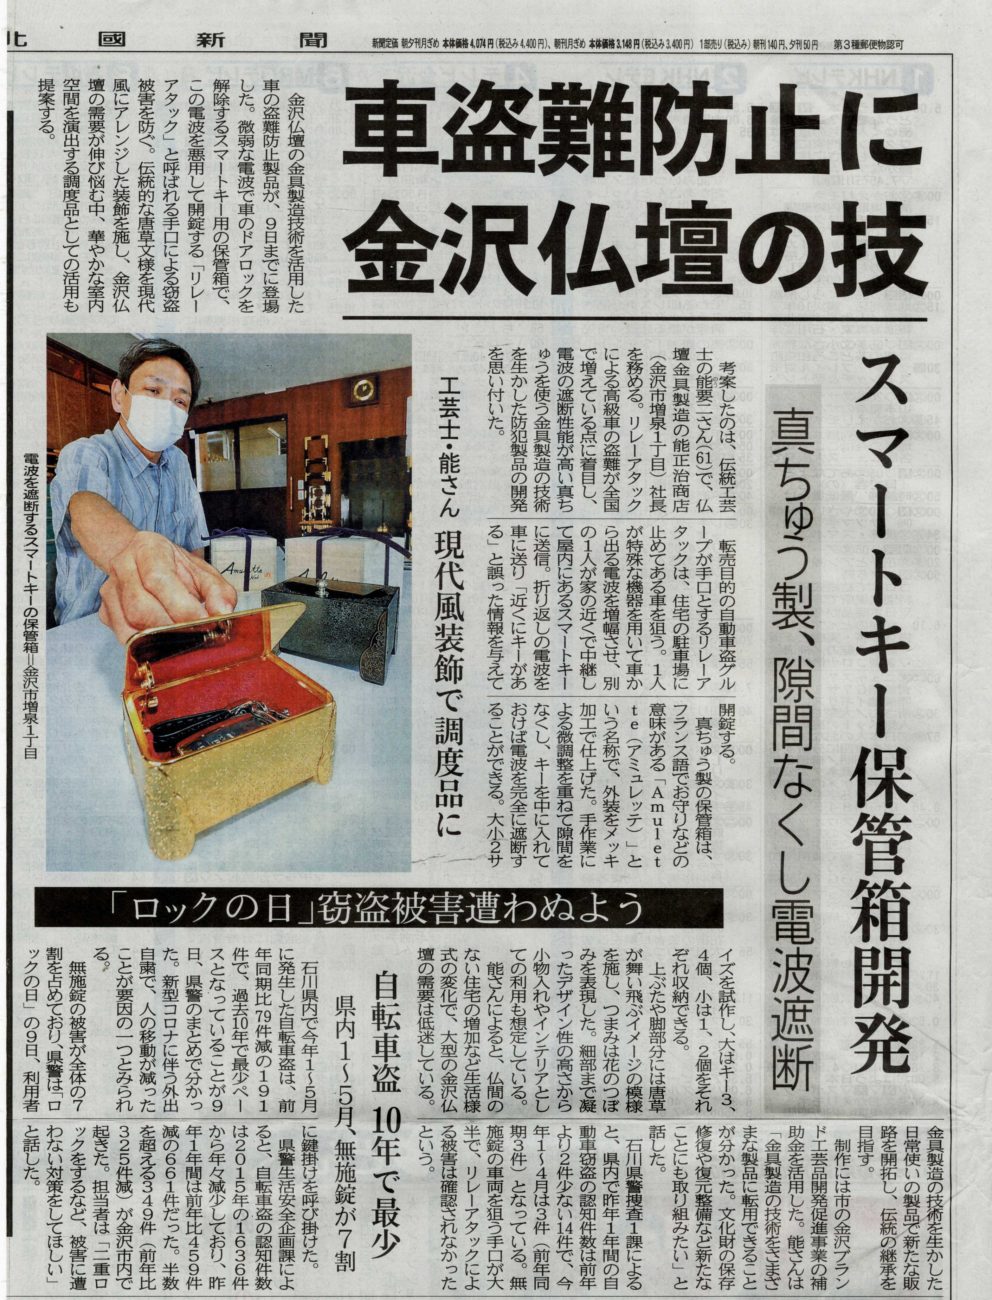 It was published in the Hokkoku Shimbun